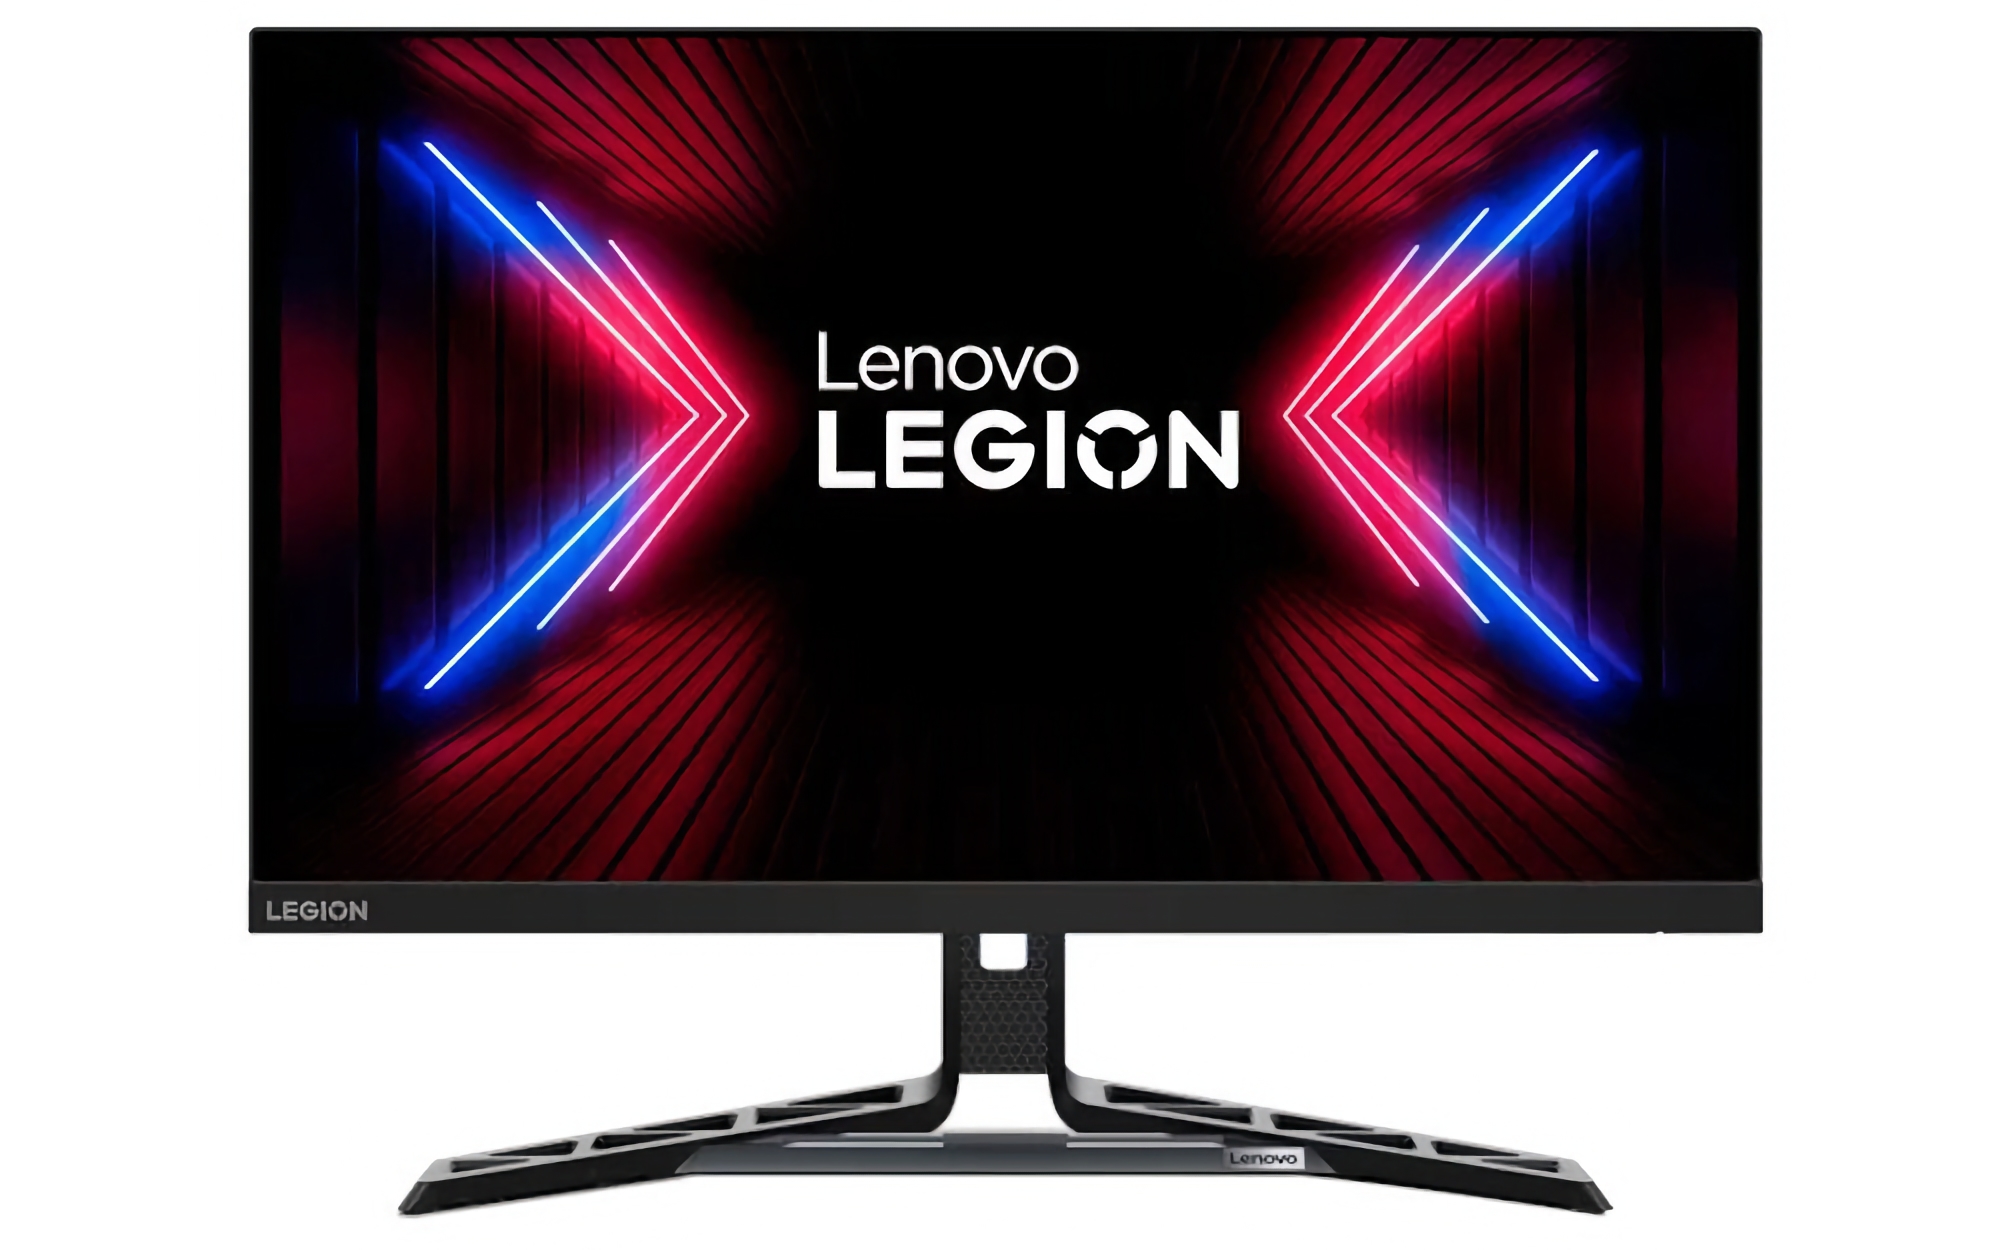 Lenovo har presenterat Legion R27fc-30 med en 27-tums skärm på 280Hz